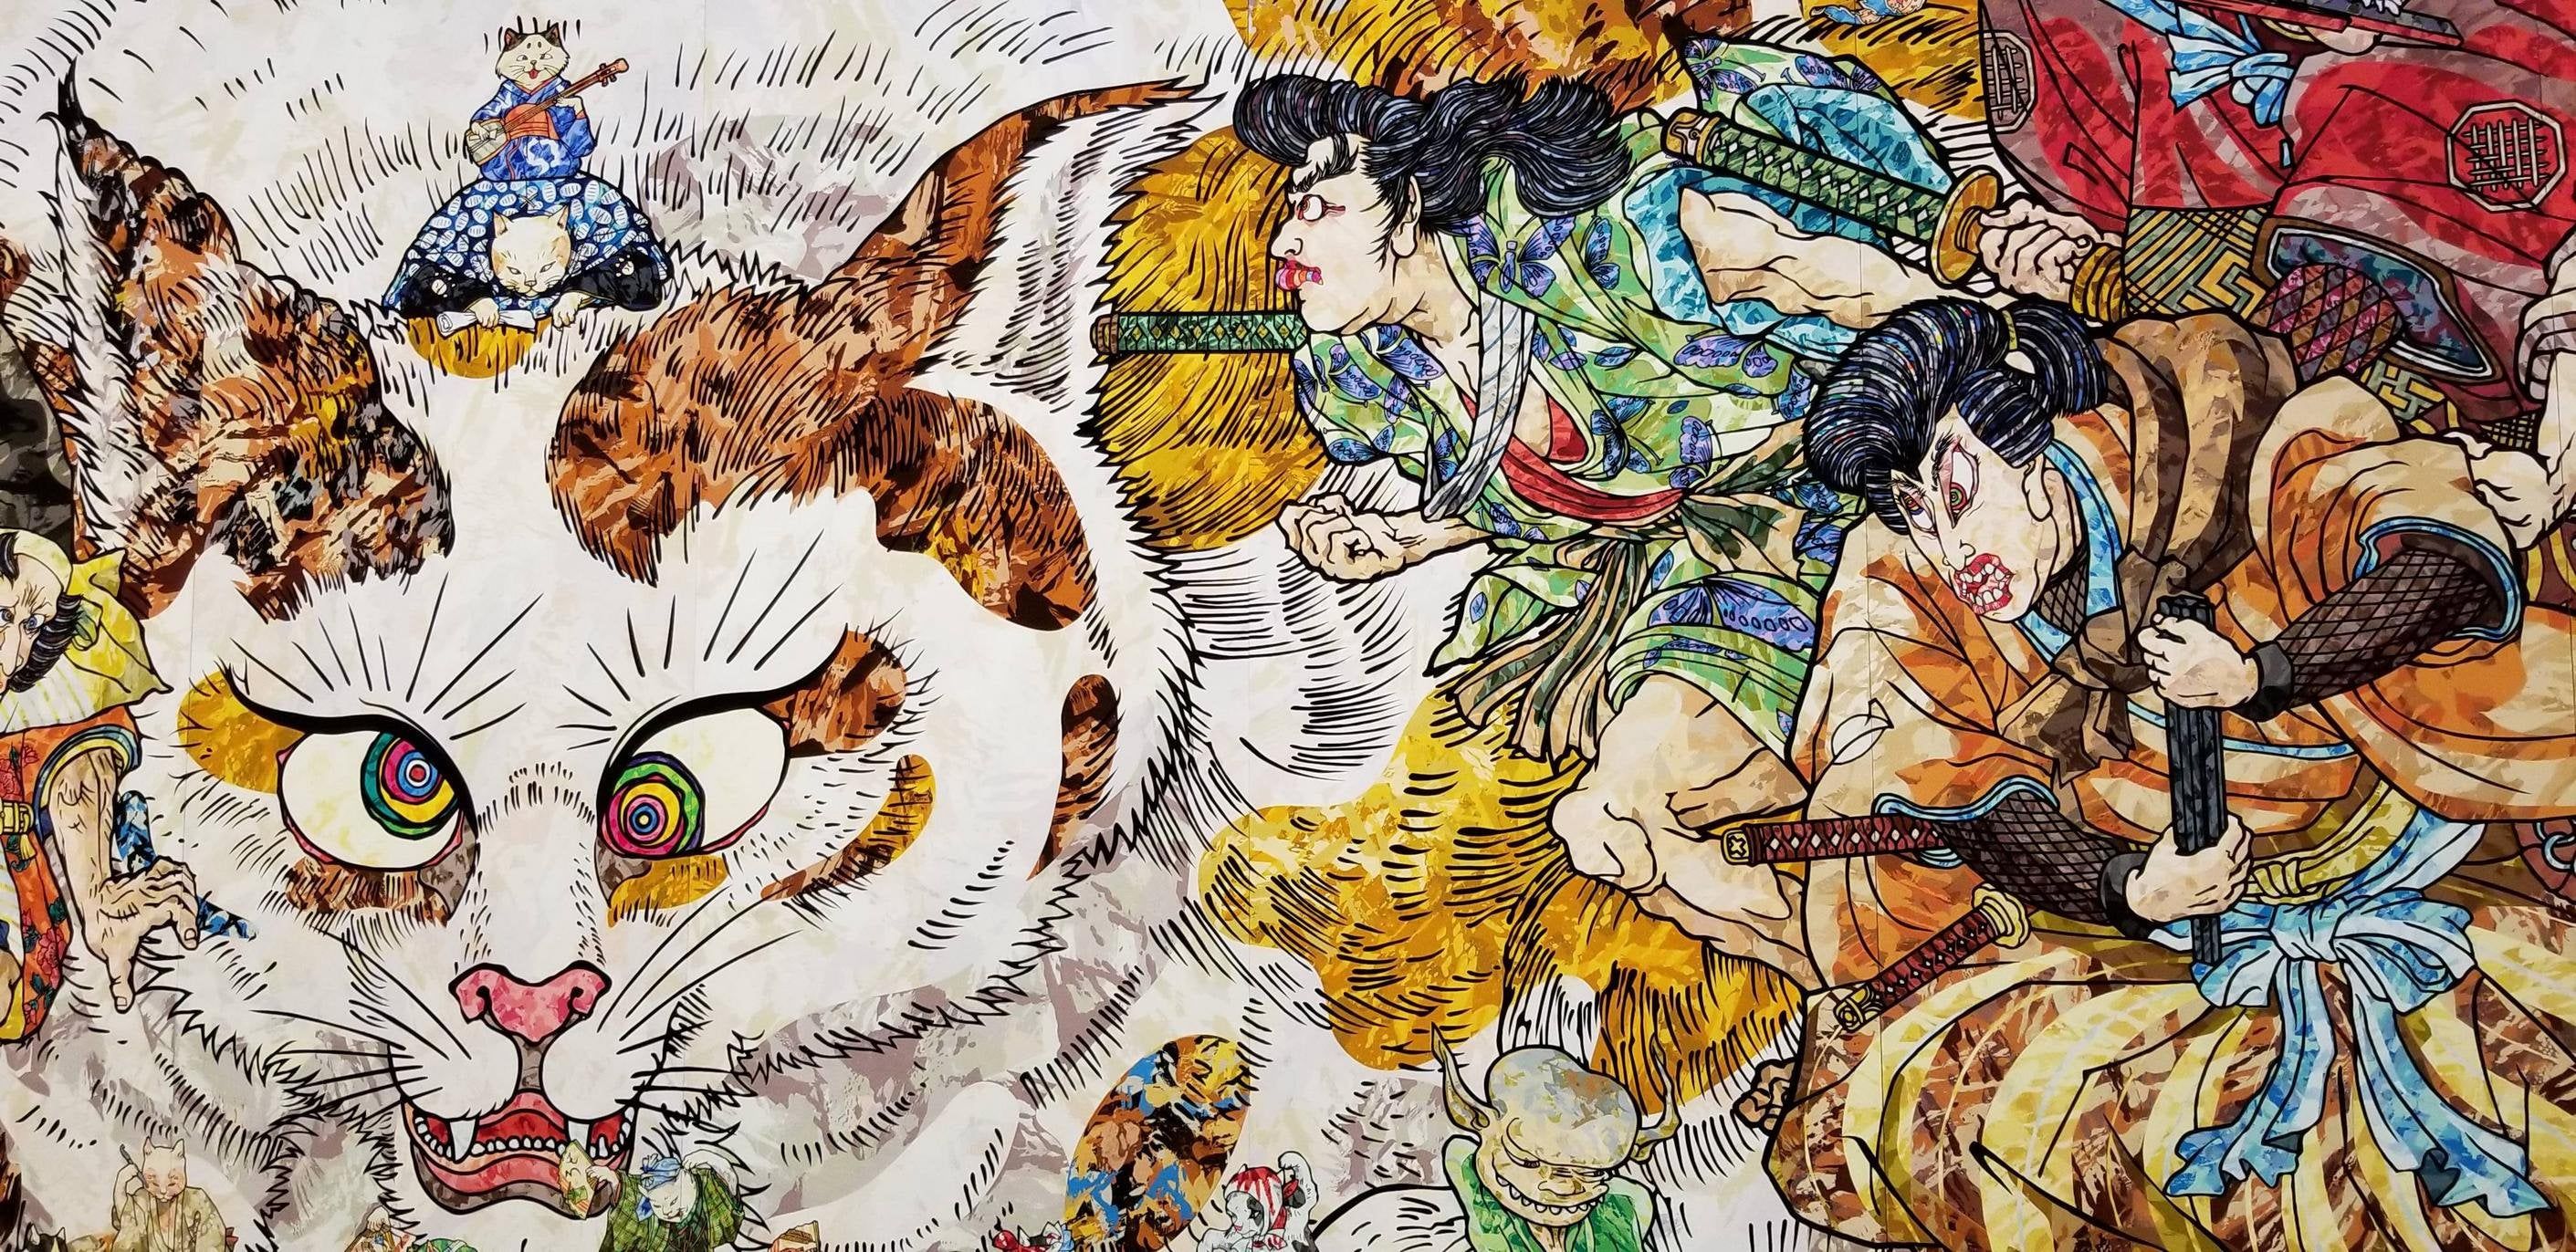 Japanese modern art, insane cat